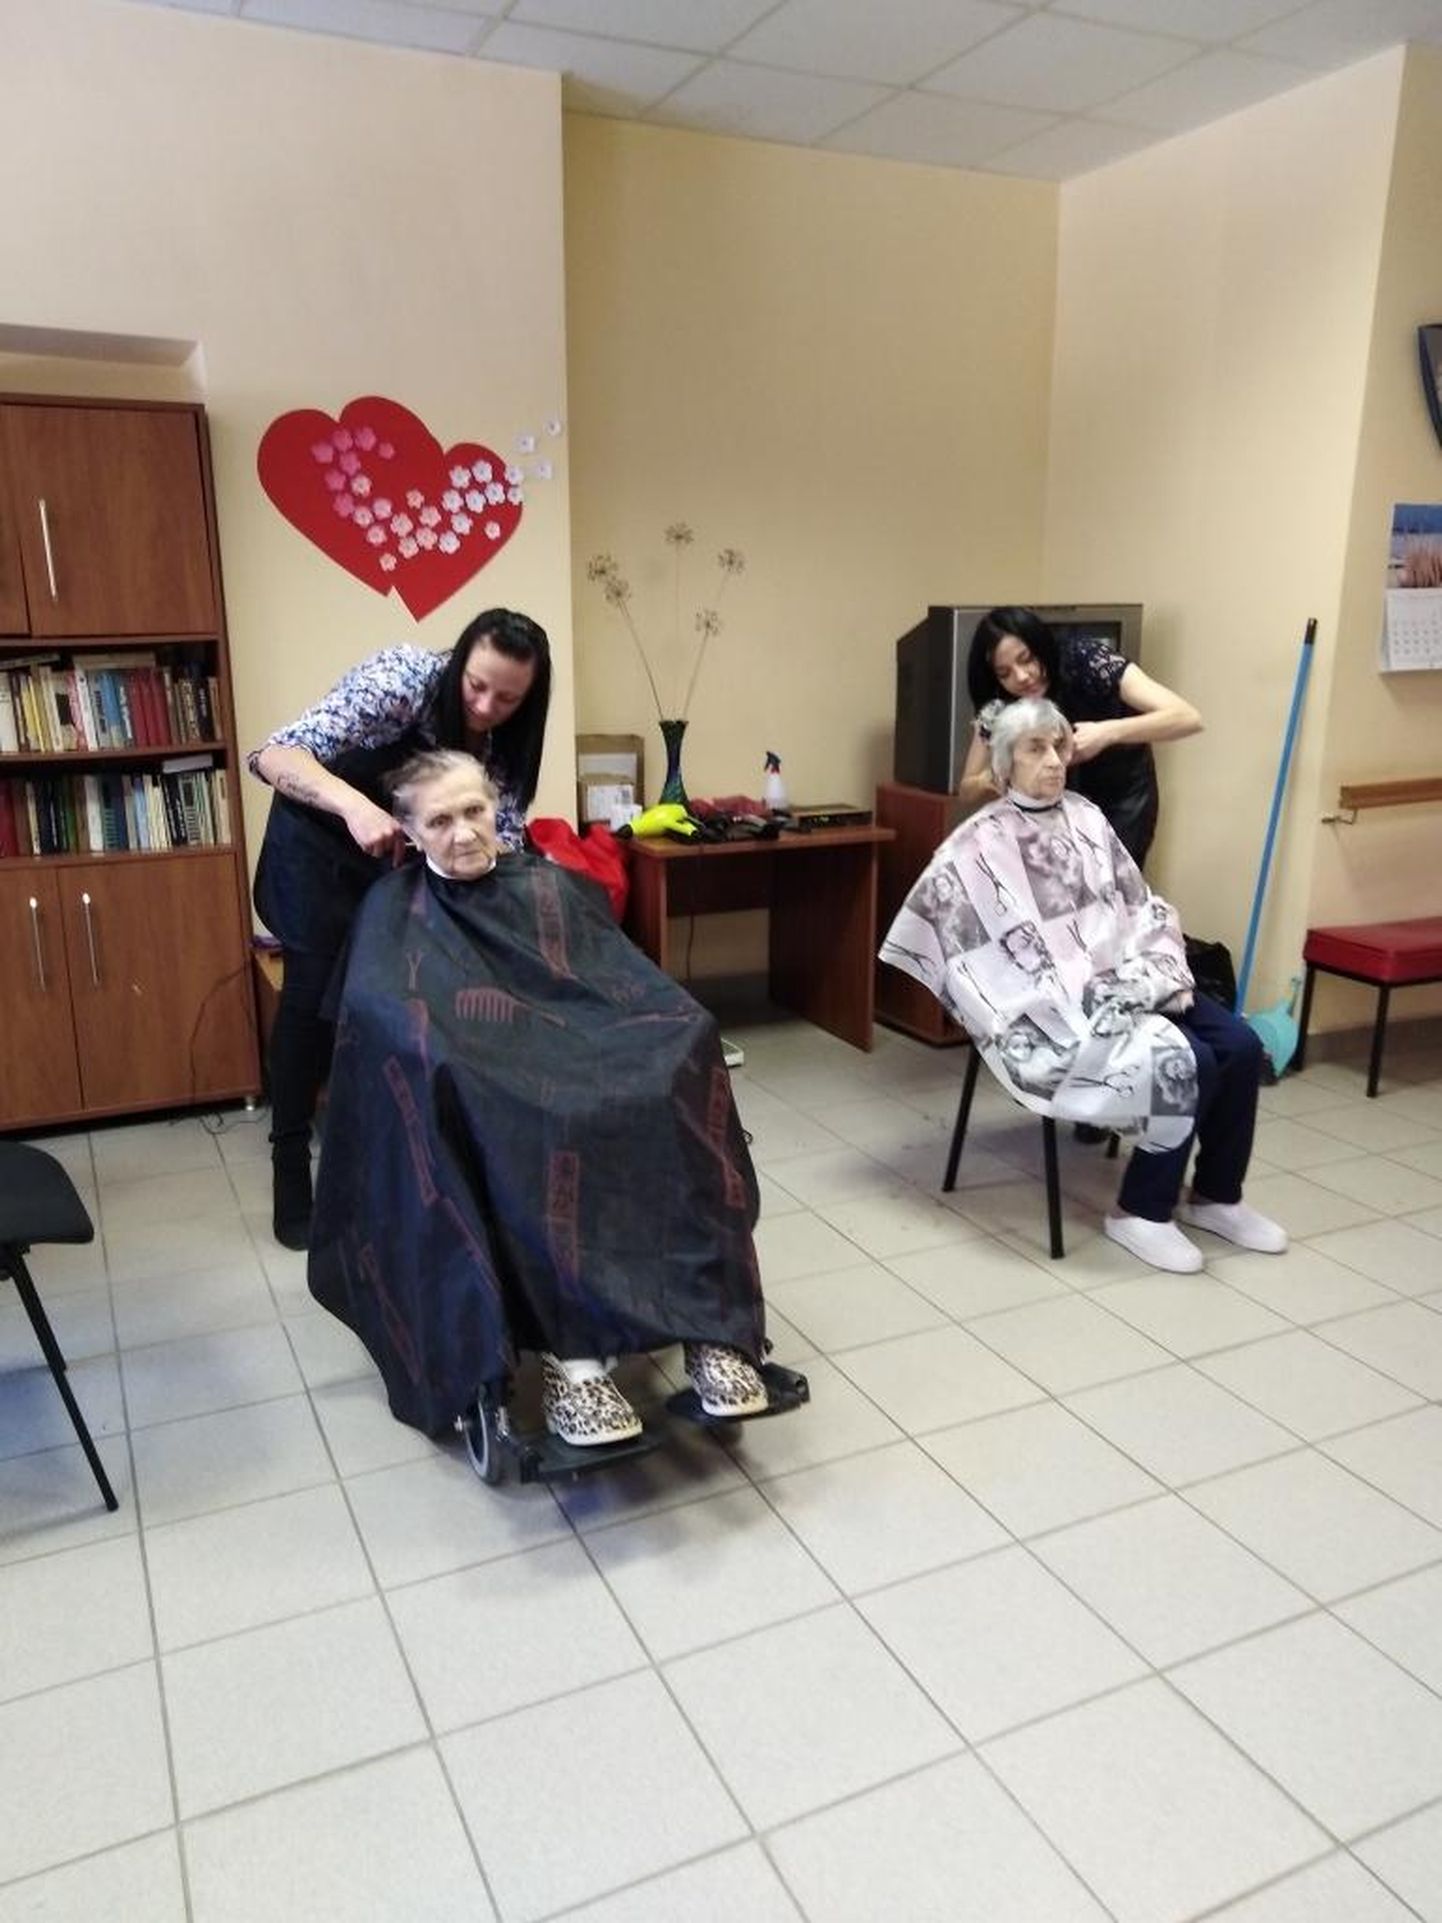 Noored juuksurid pakkusid Valka sotsiaalmajas eakatele tasuta juukselõikust.